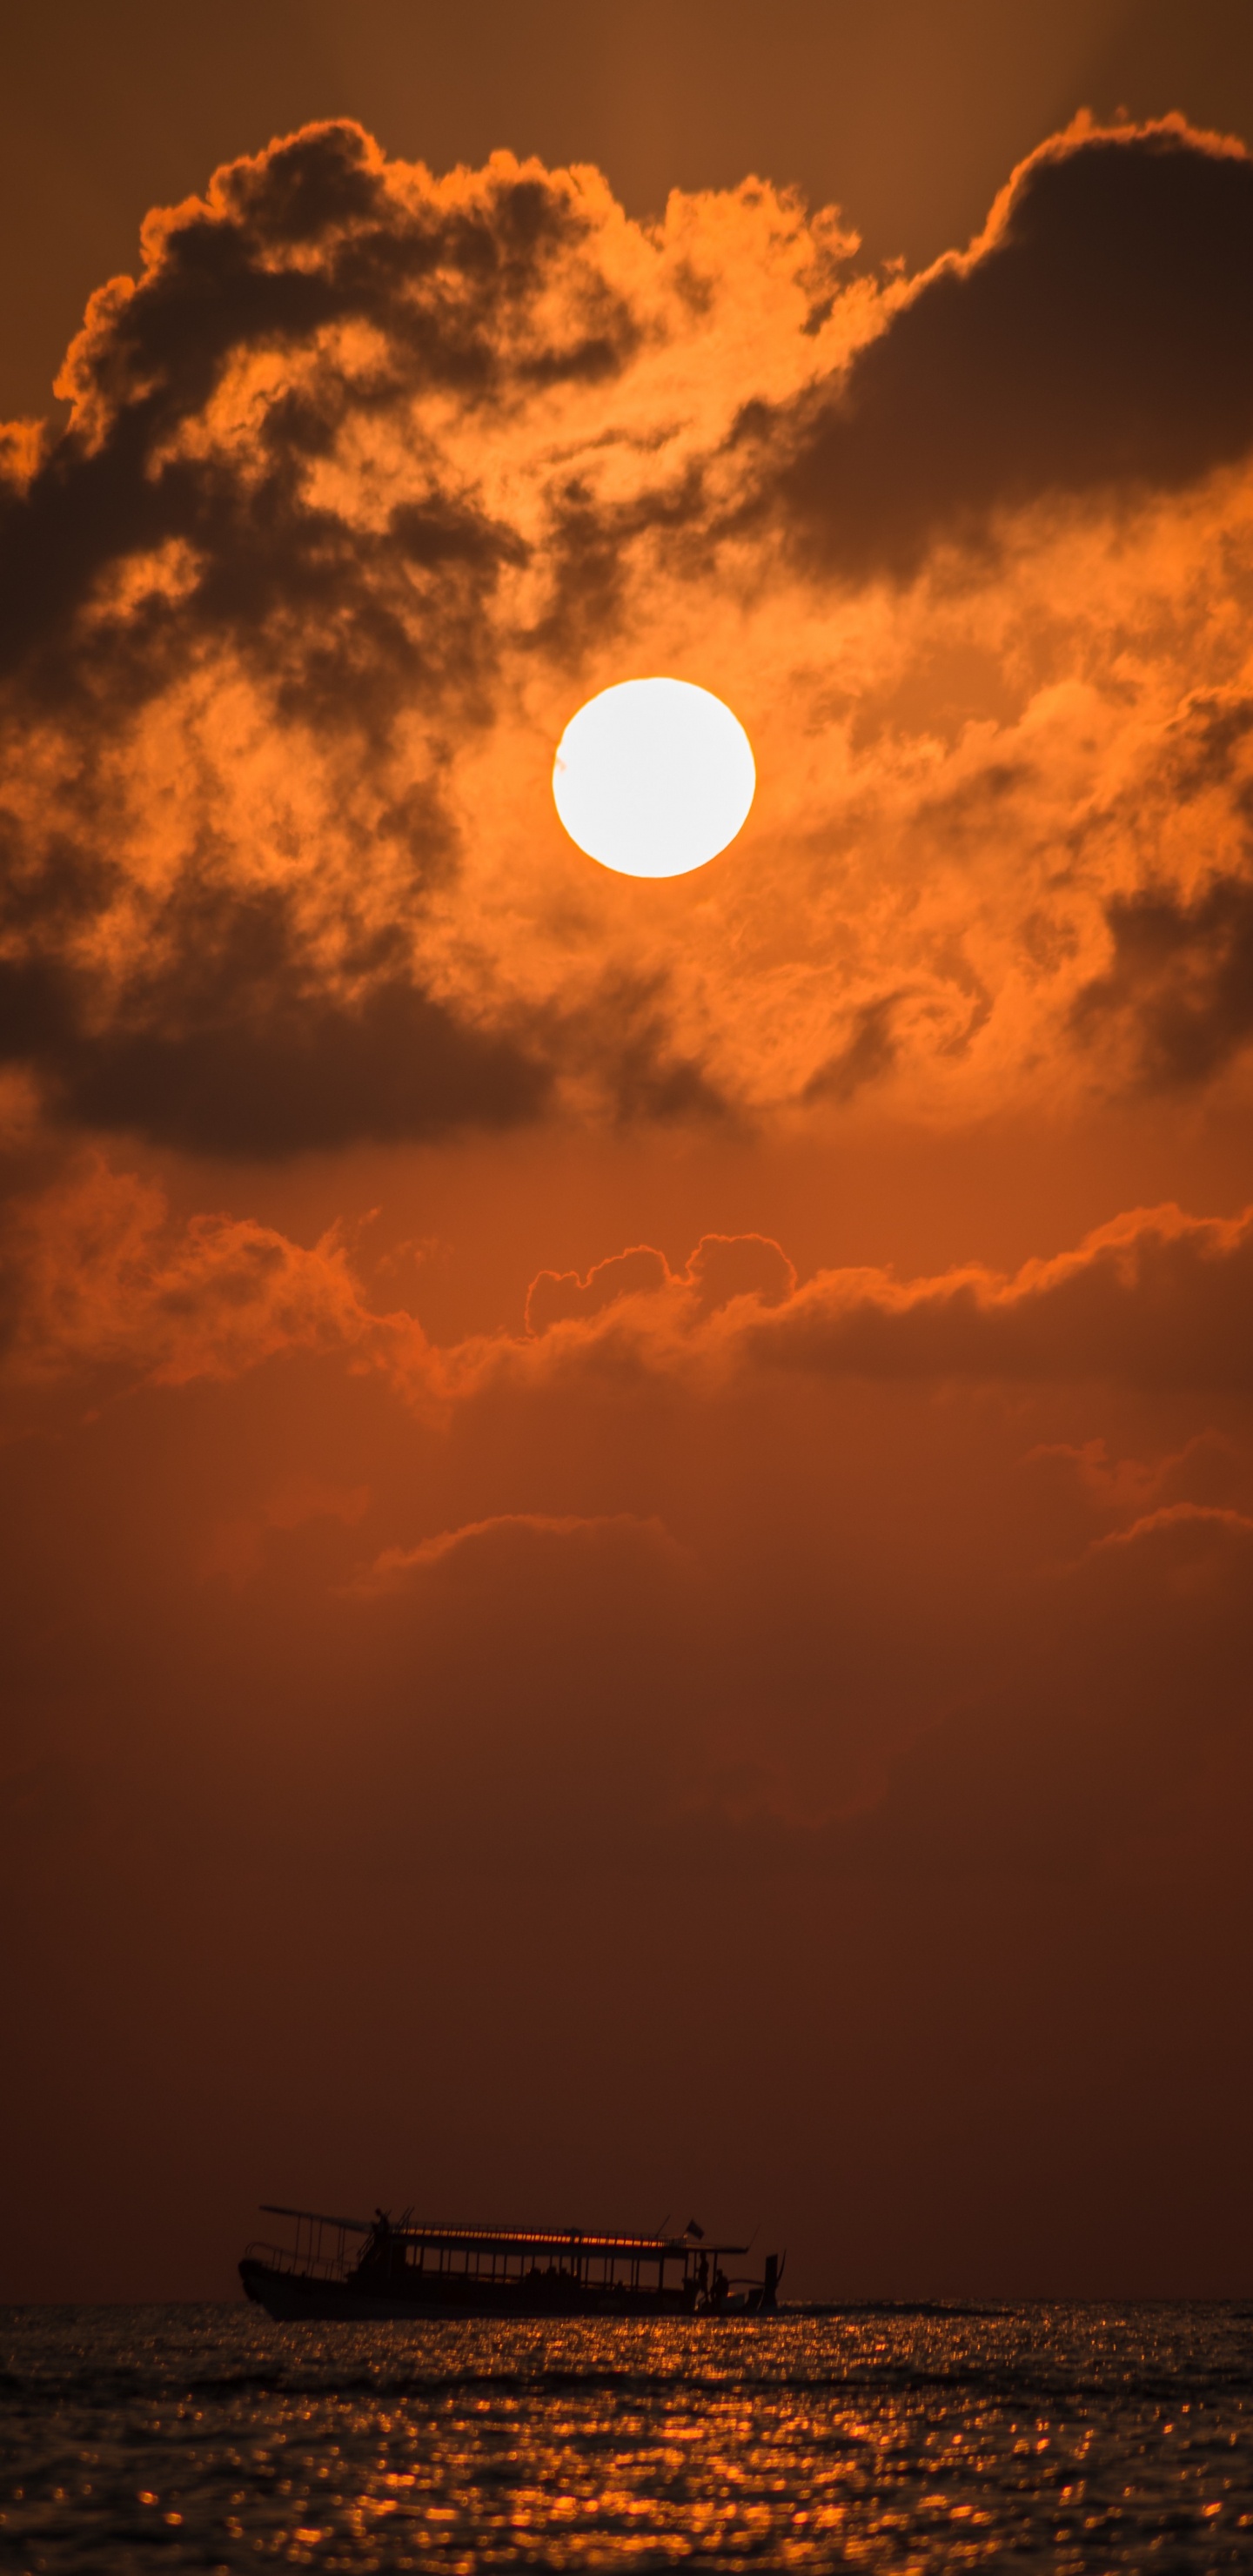 Sonnenuntergang, Afterglow, Sonne, Cloud, Orange. Wallpaper in 1440x2960 Resolution